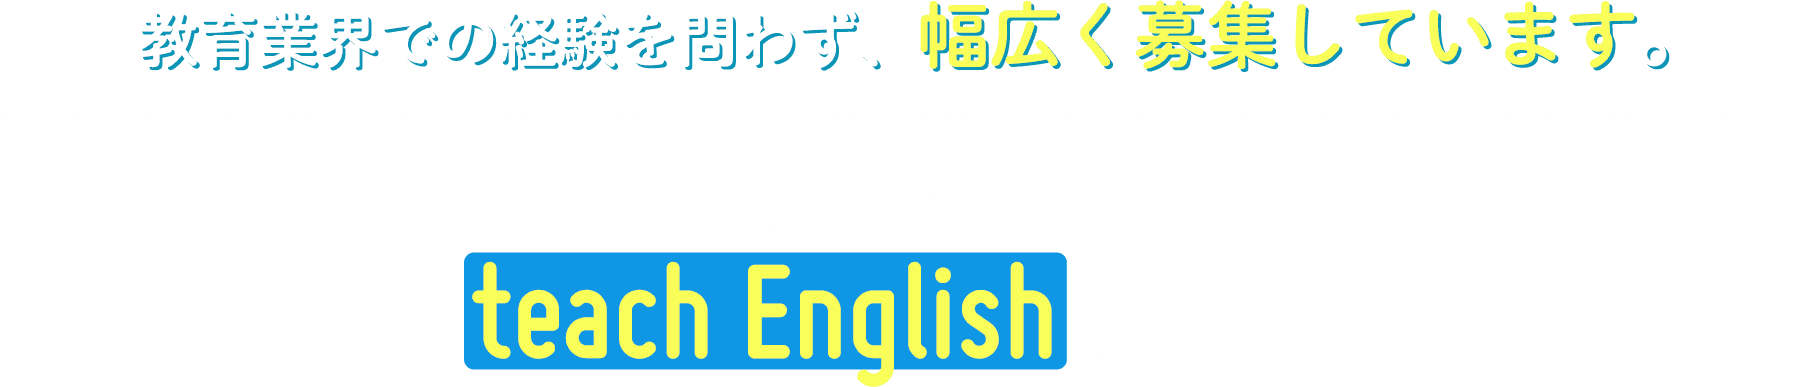 教育業界での経験を問わず、幅広く募集しています。Use your past experiences to teach English to children!